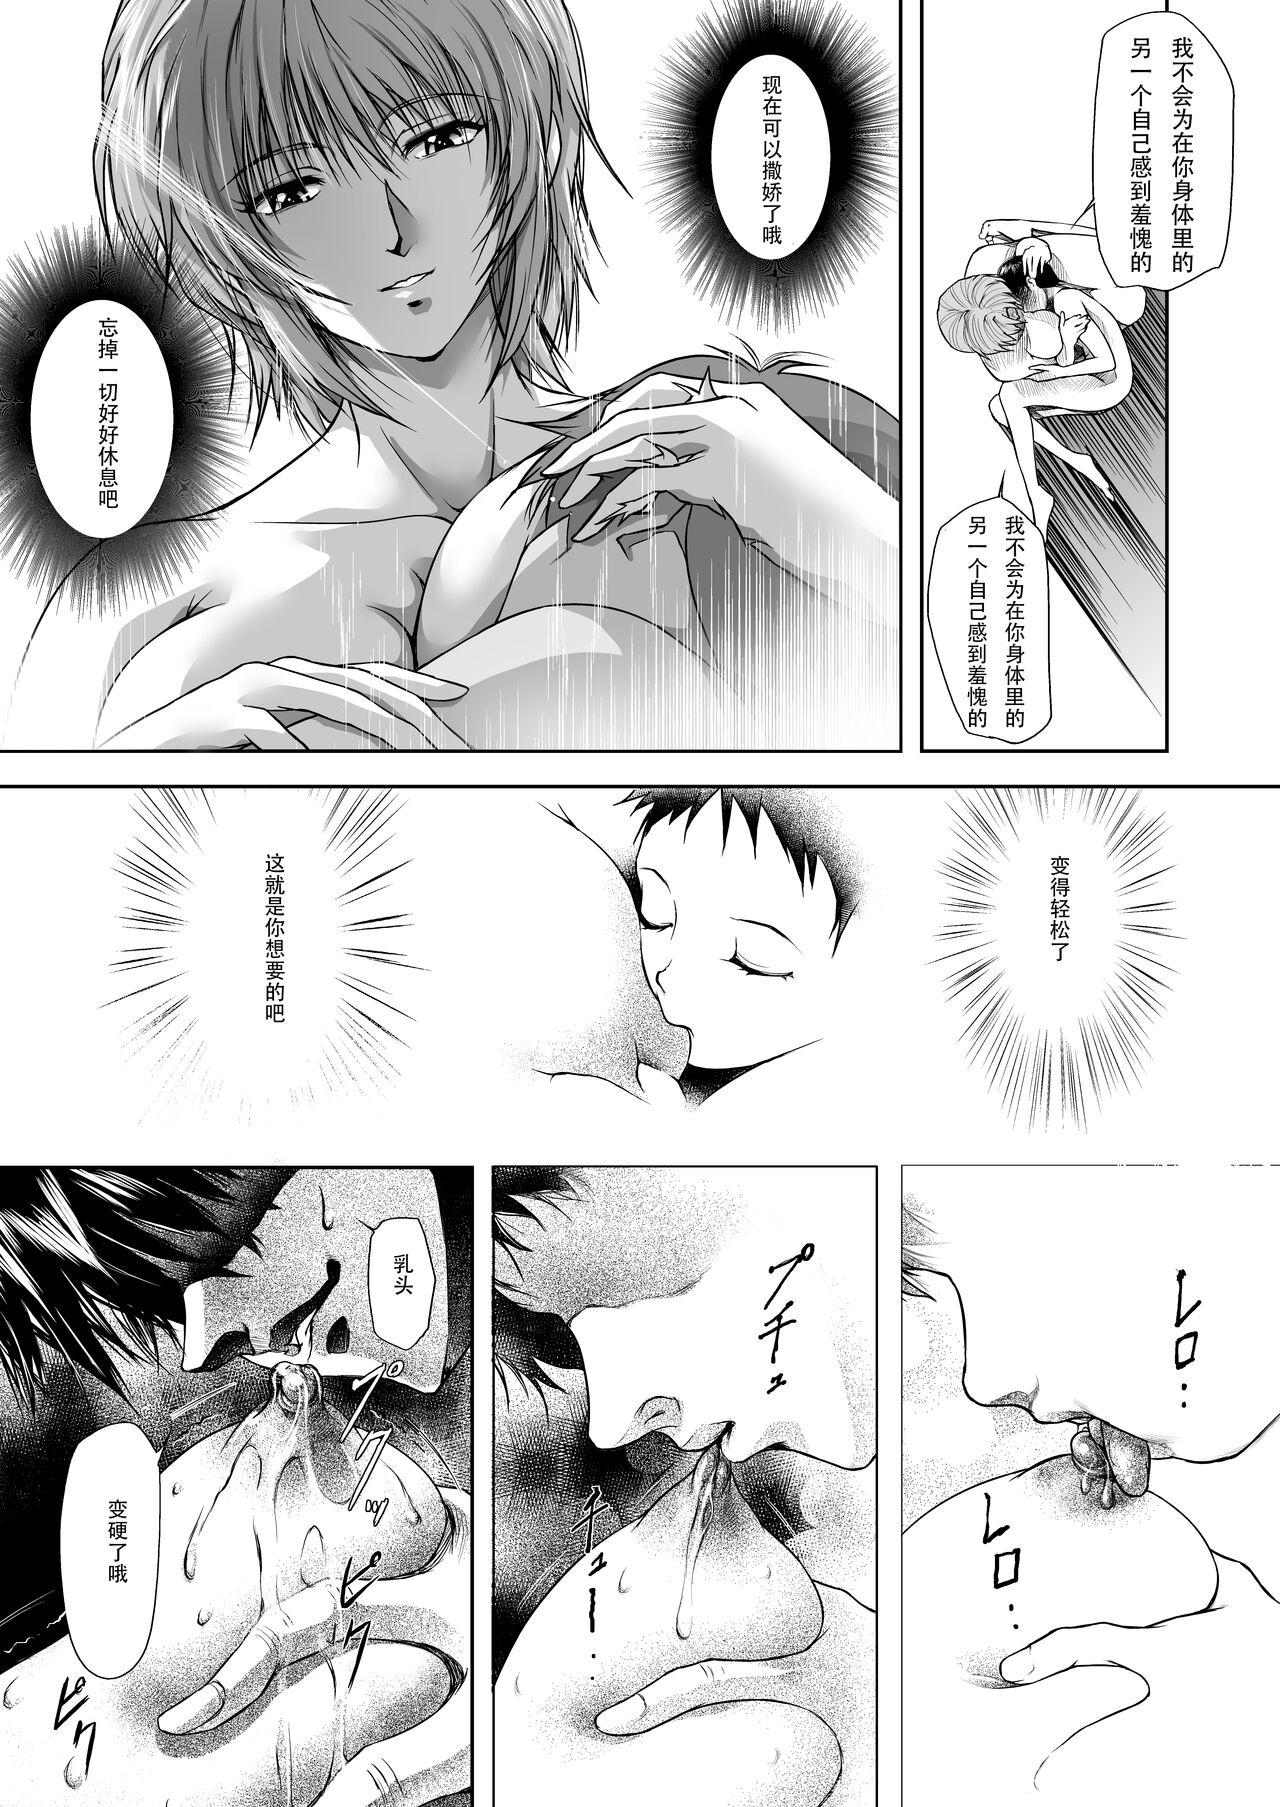 Swallowing Bosei no Shinjitsu - Neon genesis evangelion Marido - Page 6